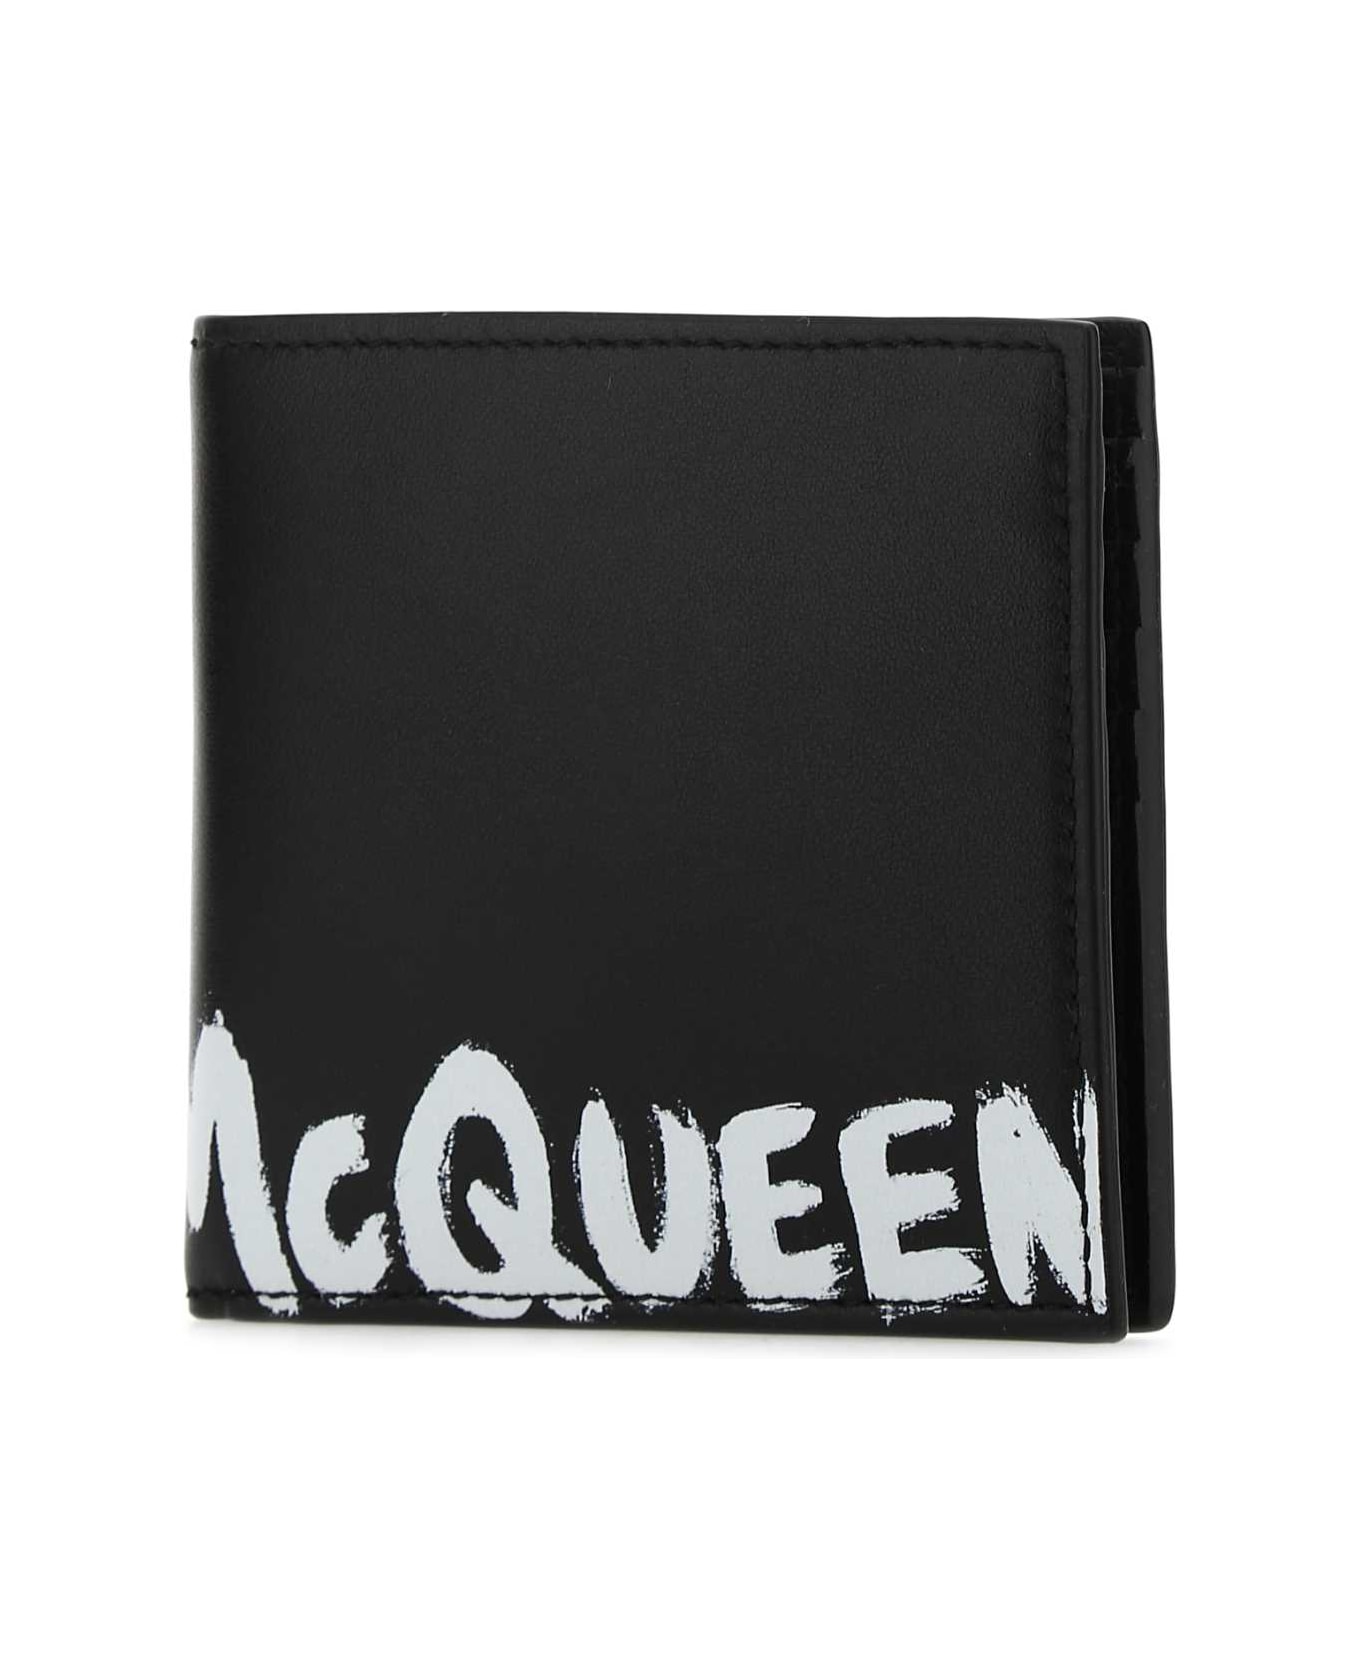 Alexander McQueen Black Leather Wallet - 1070